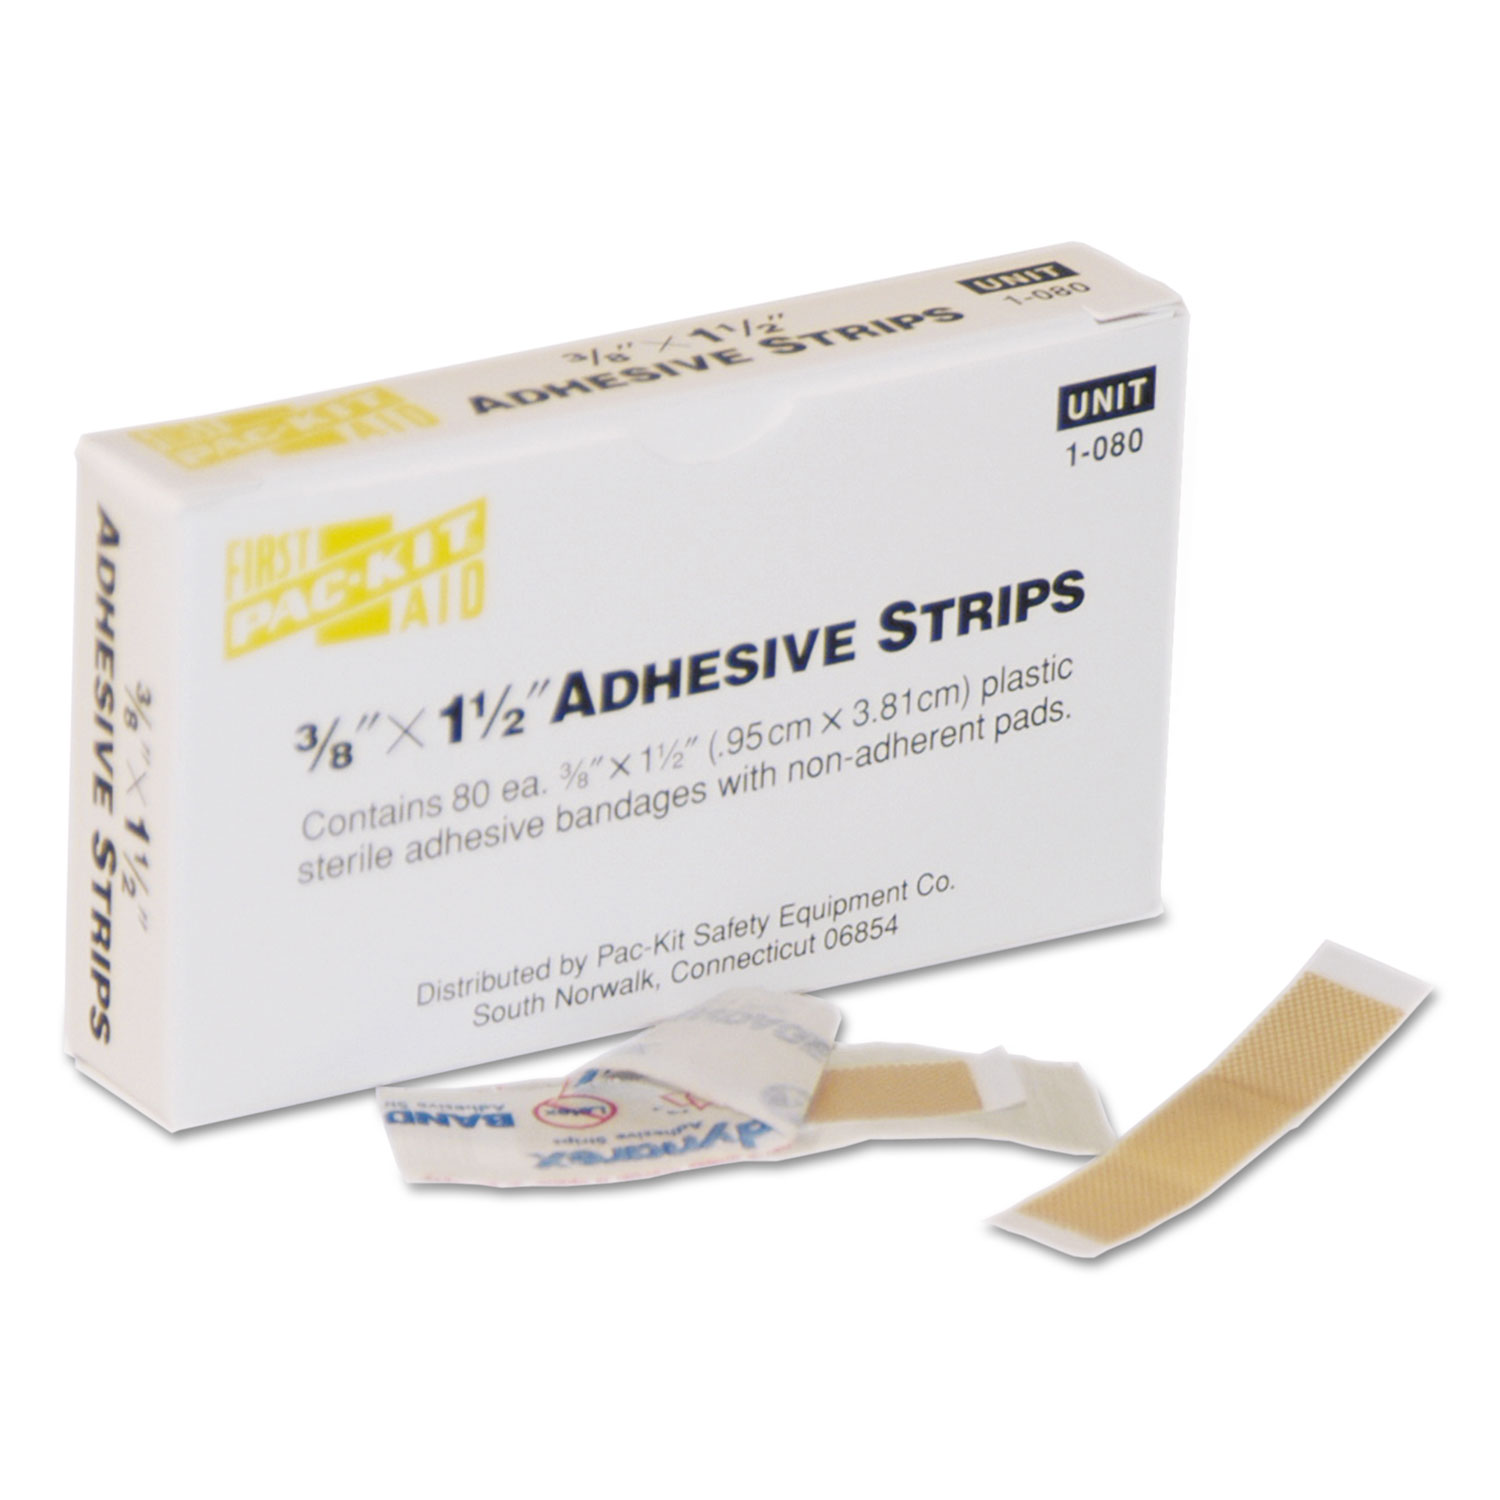 SmartCompliance Plastic Bandage, 3/8 x 1 1/2, 80/Box